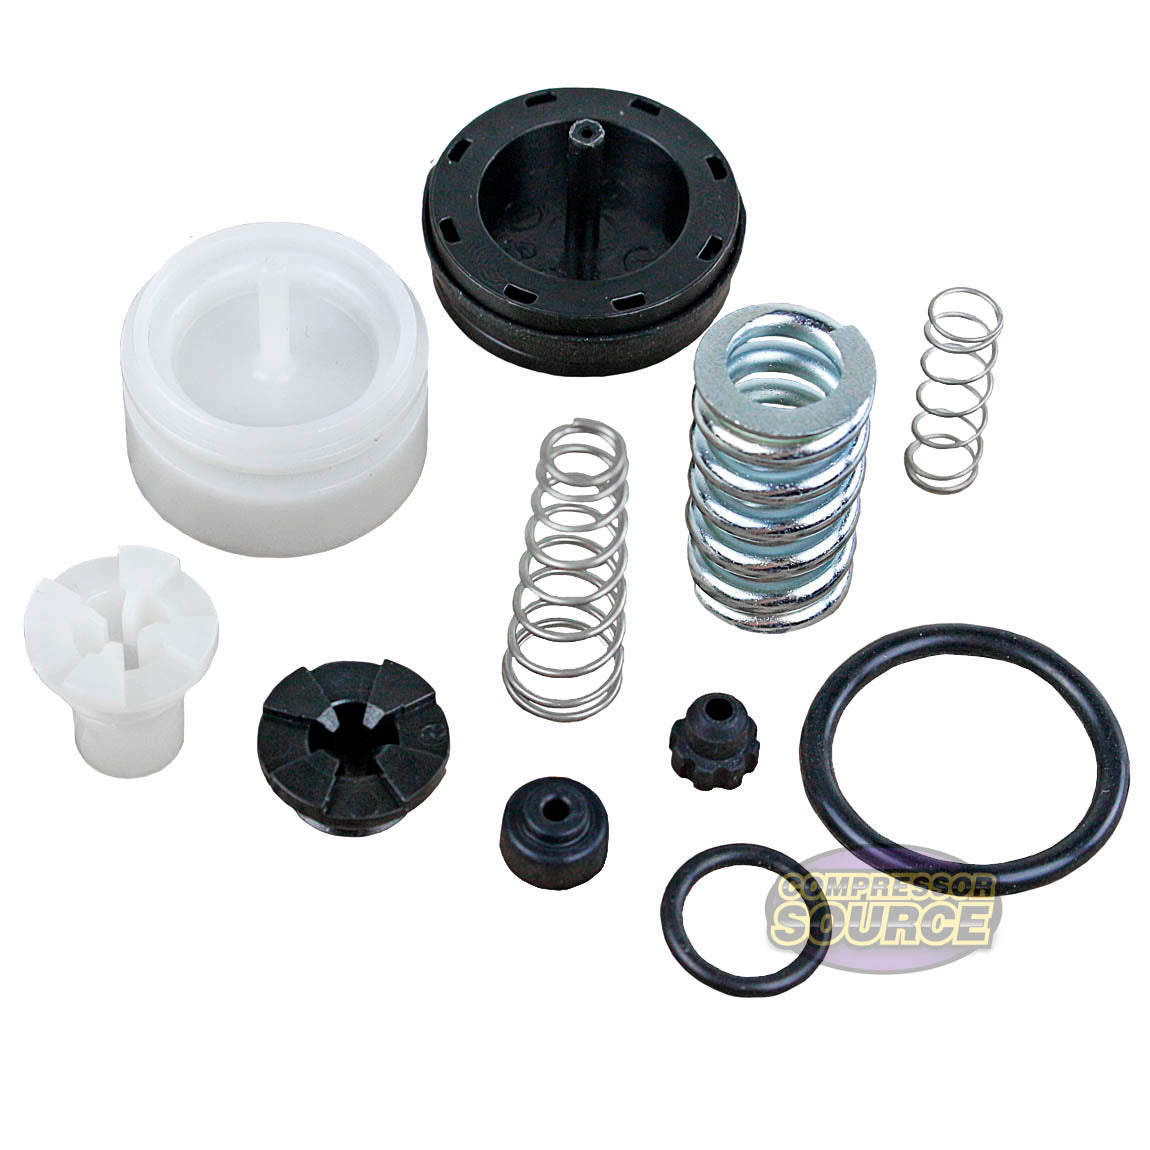 Powermate Regulator Repair Kit For Powermate Electric Air Compressors 105-0015